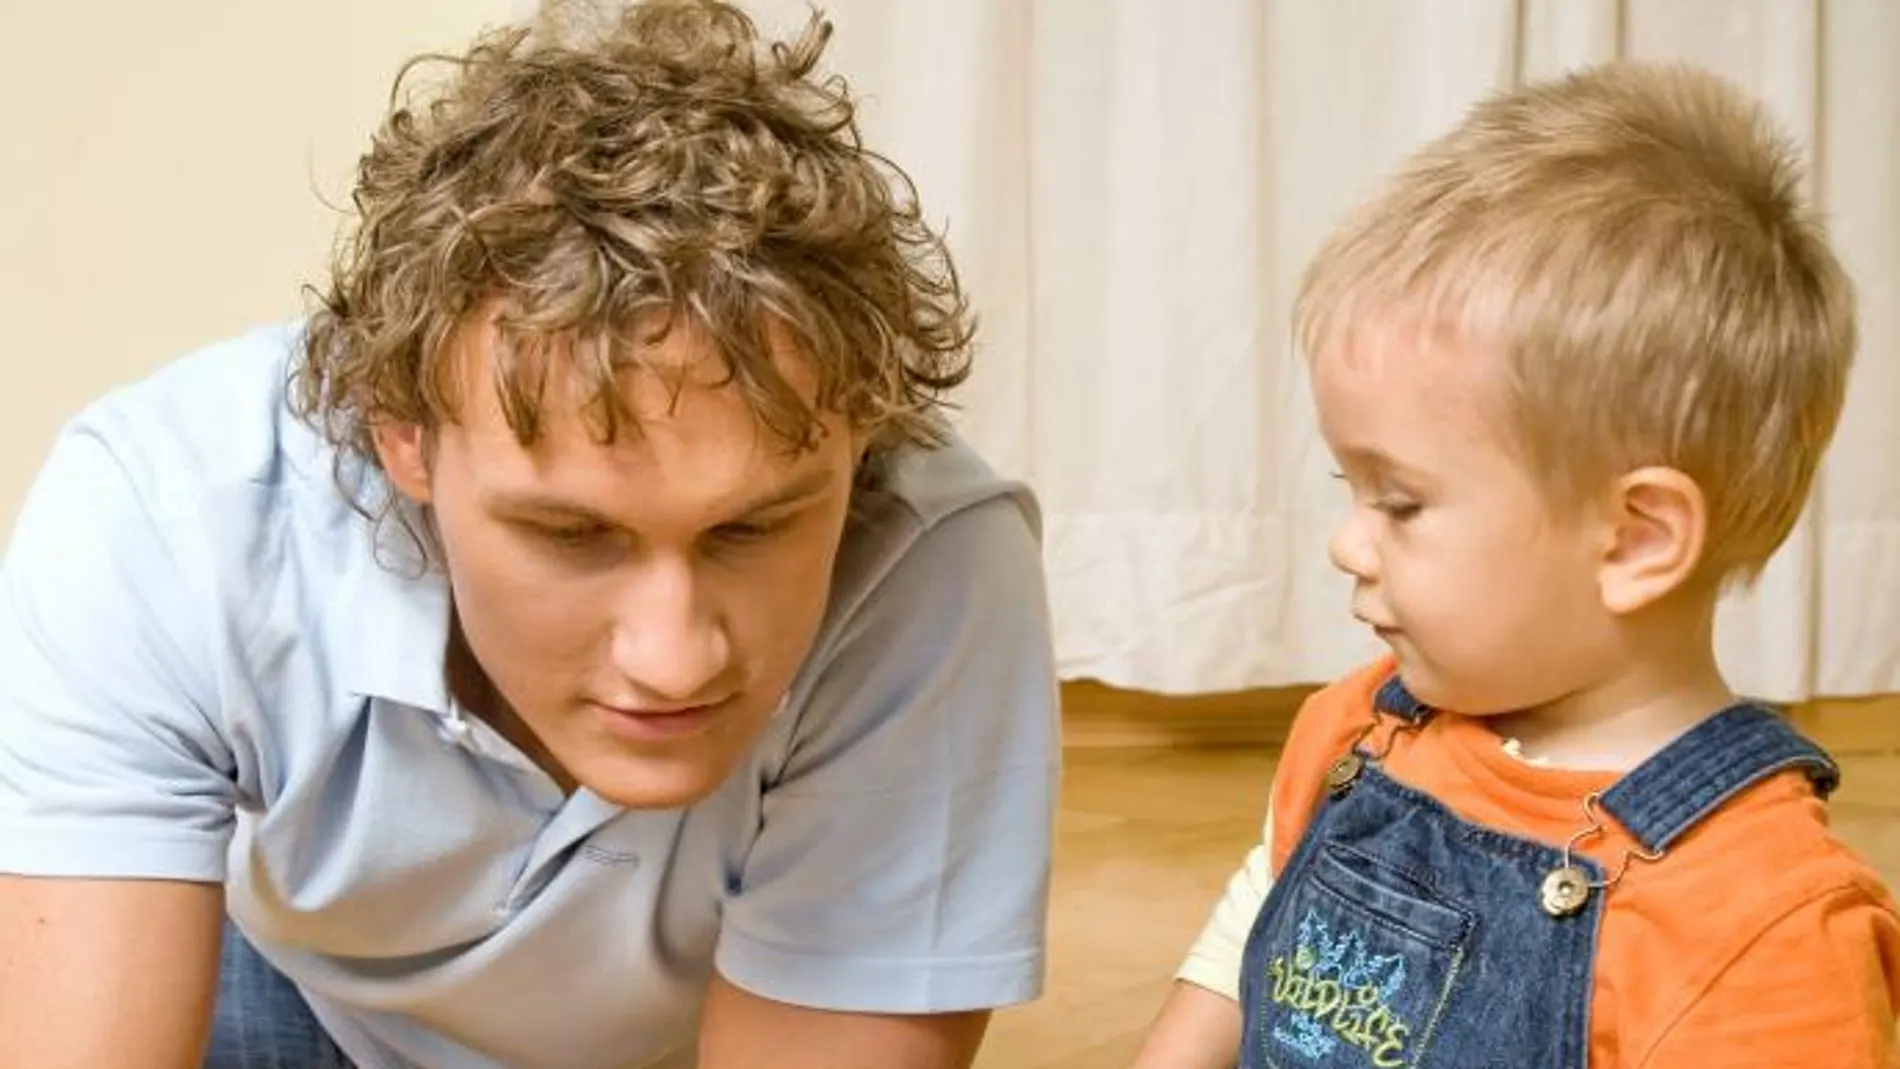 La figura paterna aporta estabilidad familiar y desarrollo social, según el estudio